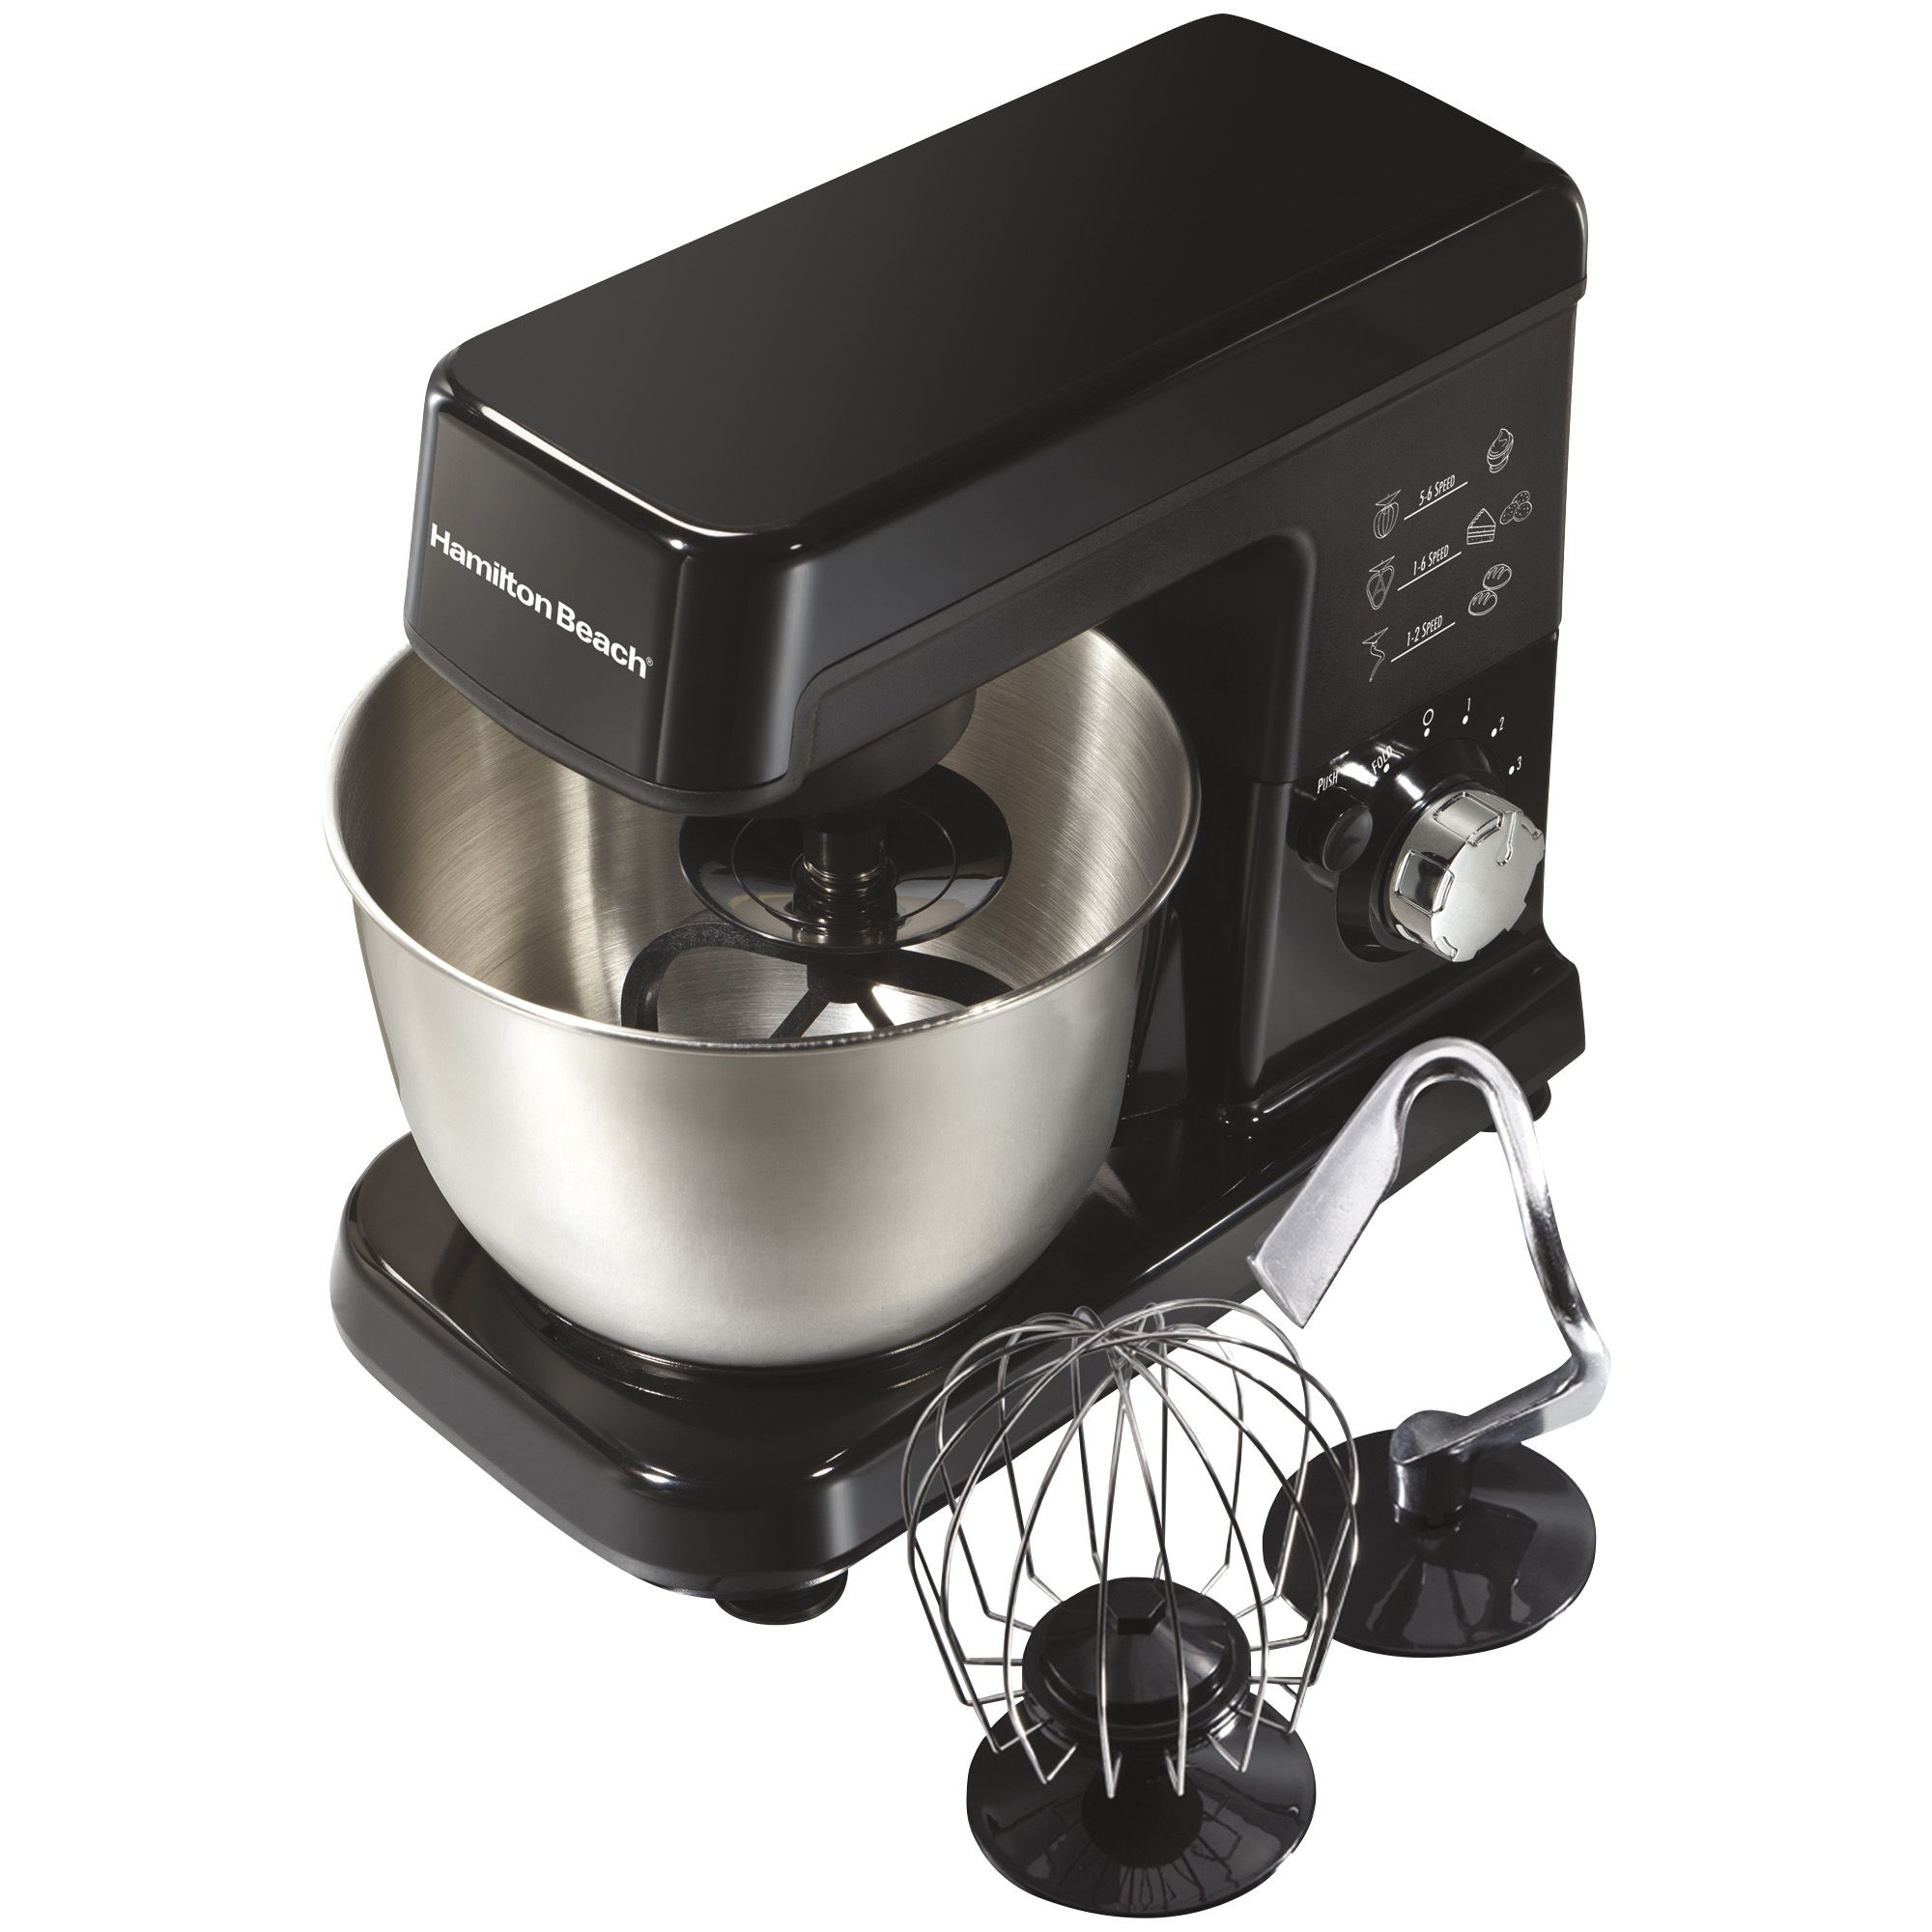 Fingerhut - Cuisinart Precision Master 5.5-Qt. 12-Speed Stand Mixer